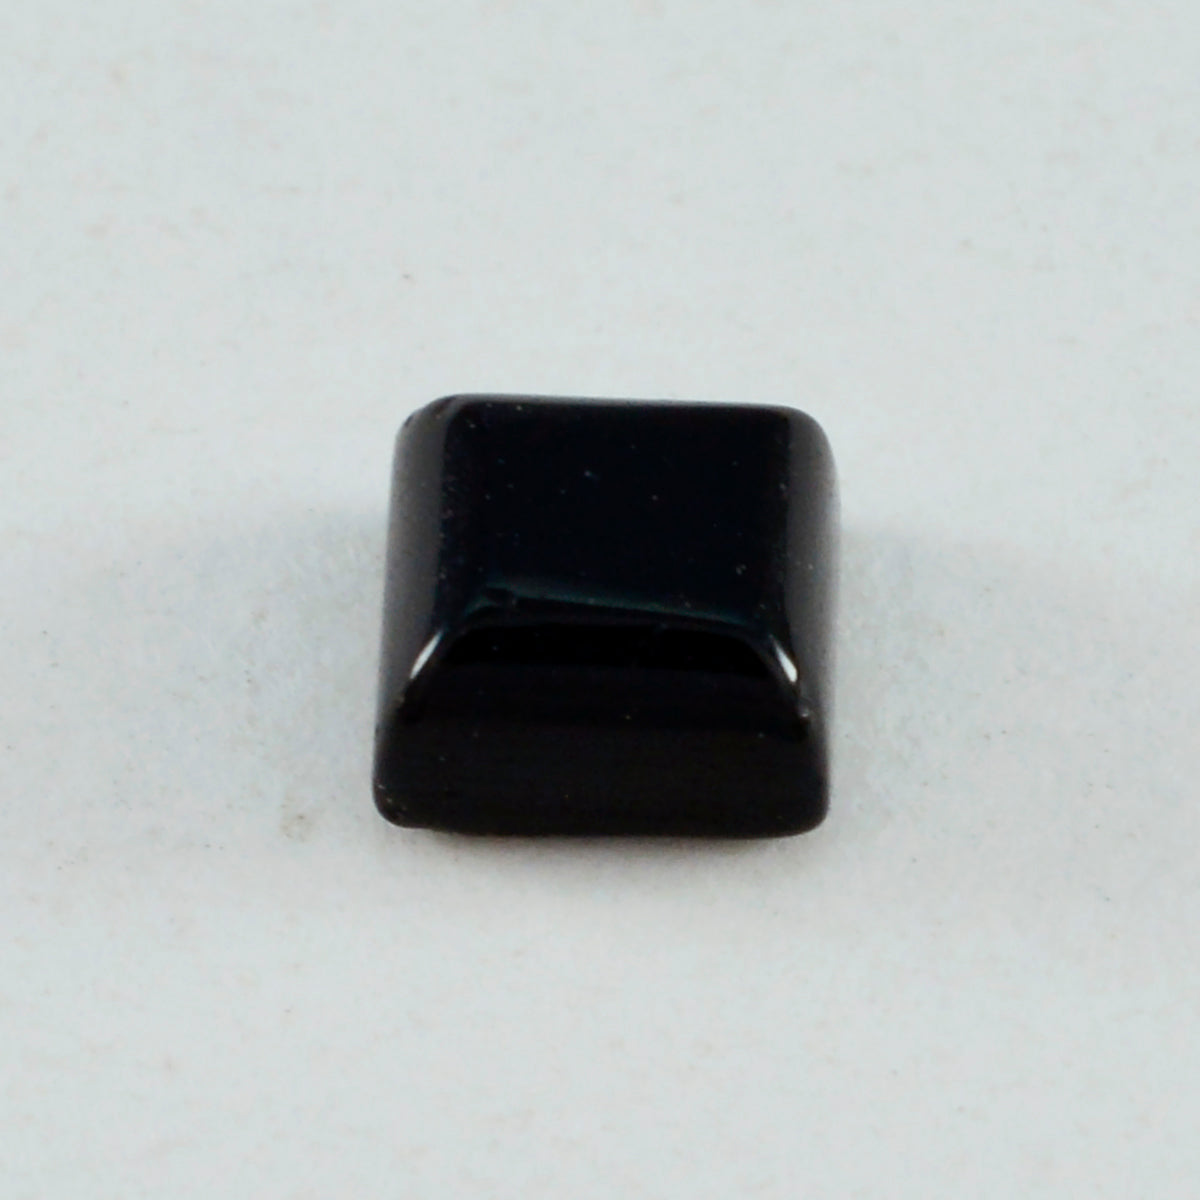 riyogems 1 шт. черный оникс кабошон 11x11 мм квадратной формы драгоценный камень прекрасного качества